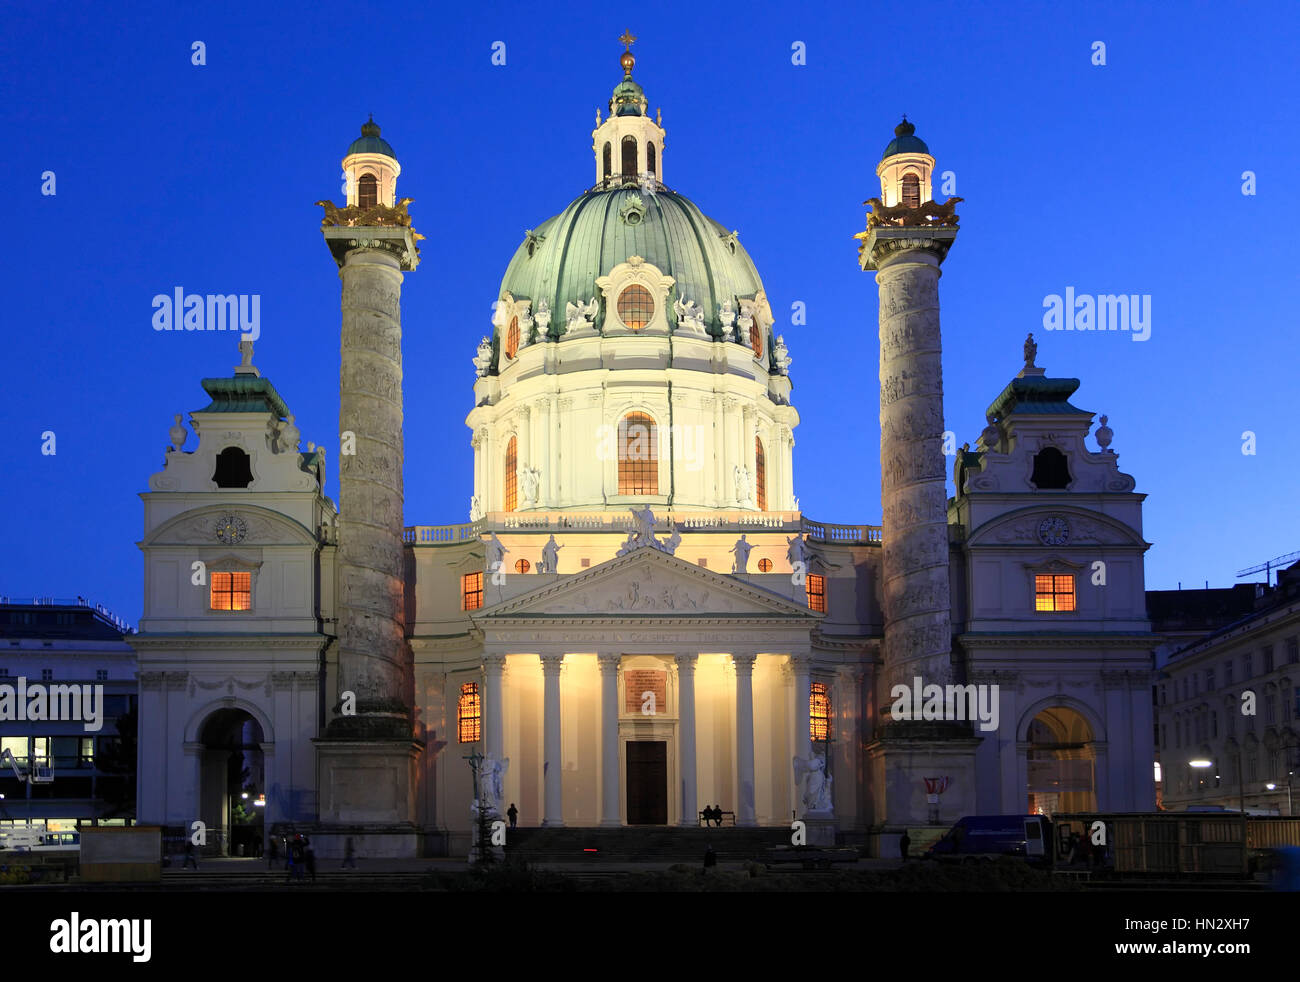 Karlskirche, St. Charles church in the evening, Karlsplatz, Vienna, Austria, Europe Stock Photo